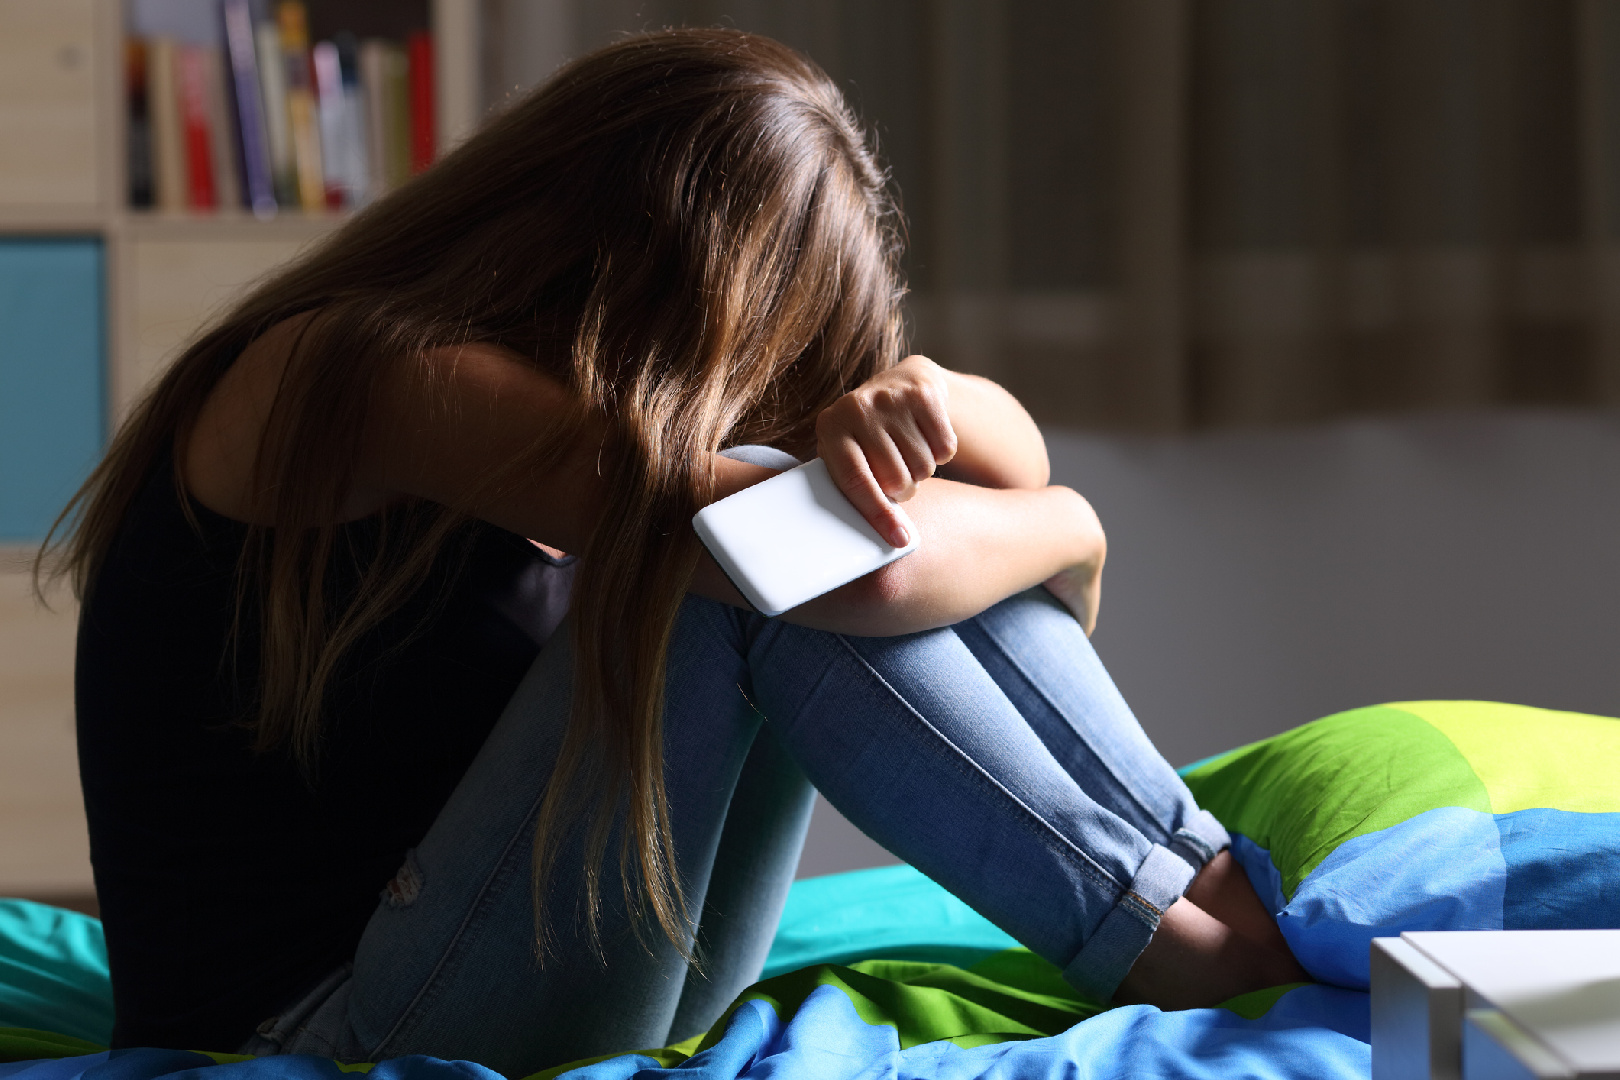 Психолог Заников: Подвергнуться травле может и подросток из благополучной среды